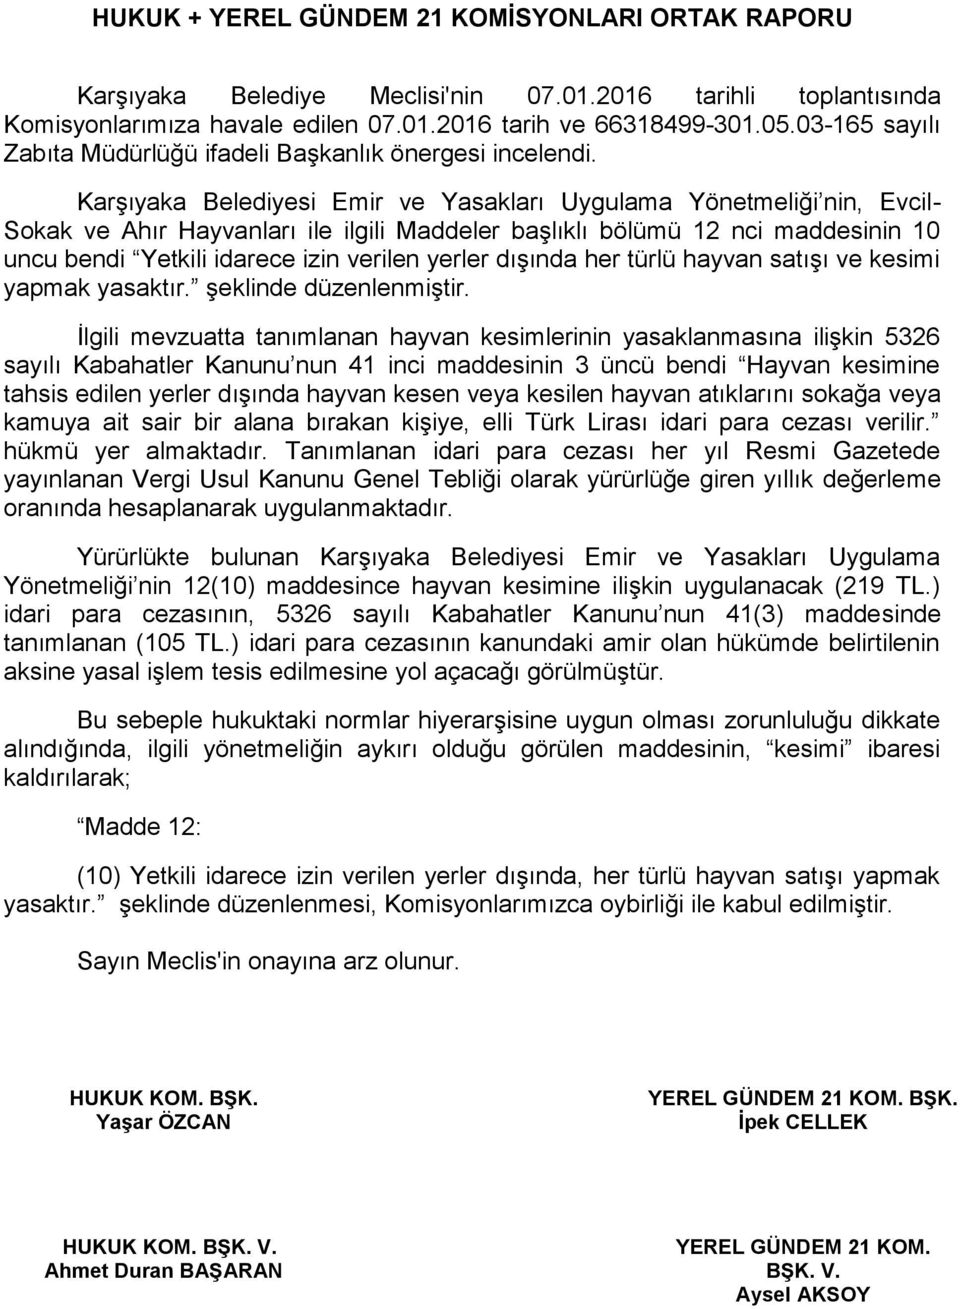 Karşıyaka Belediyesi Emir ve Yasakları Uygulama Yönetmeliği nin, Evcil- Sokak ve Ahır Hayvanları ile ilgili Maddeler başlıklı bölümü 12 nci maddesinin 10 uncu bendi Yetkili idarece izin verilen